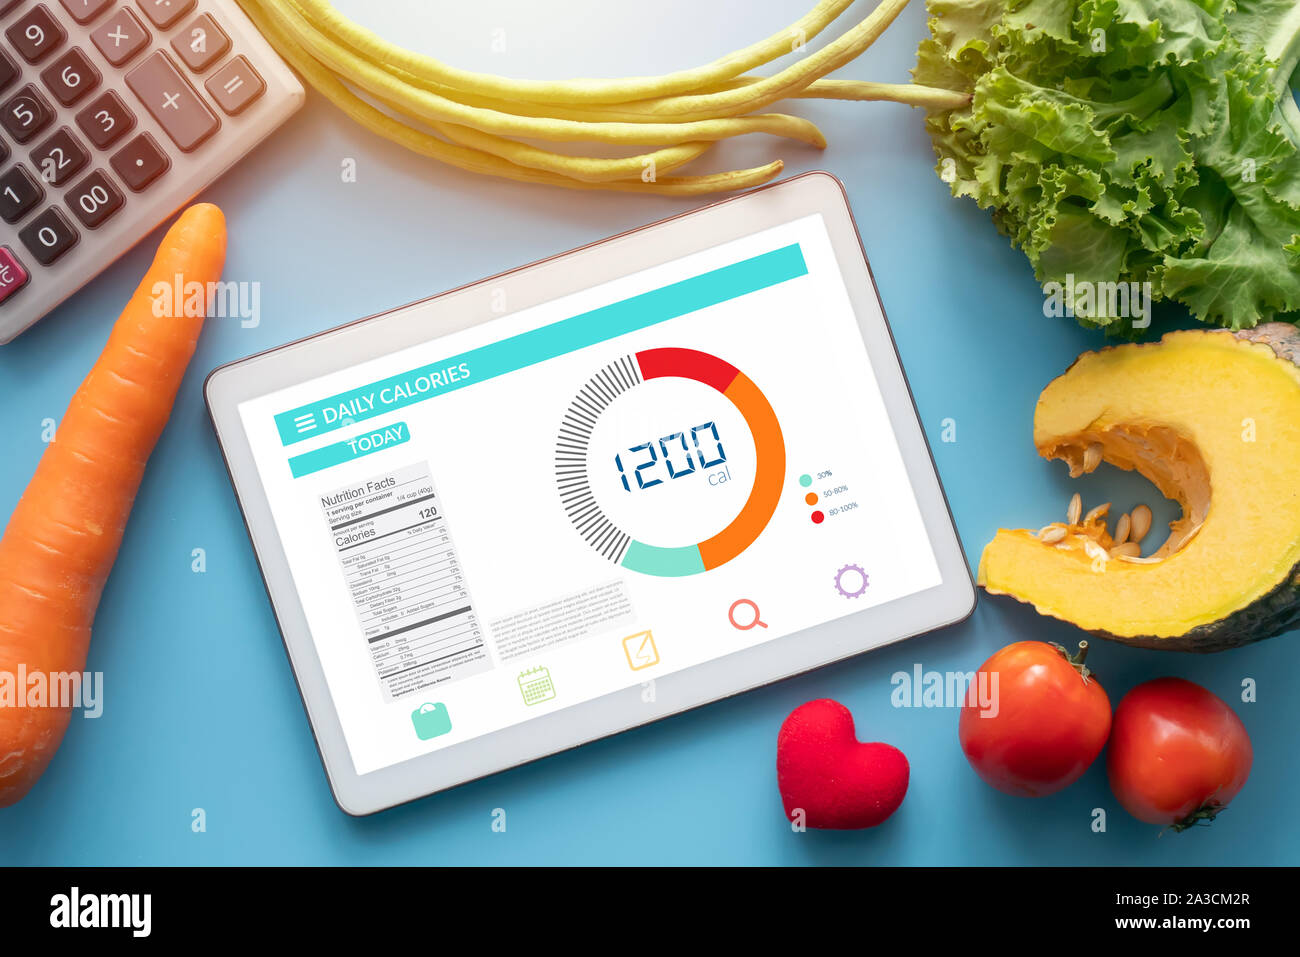 Kalorien zählen, Ernährung, der Kontrolle und Gewichtsverlust Konzept. Tablet mit Kalorienzähler Anwendung auf dem Bildschirm am Esstisch mit Gemüse- und Stockfoto